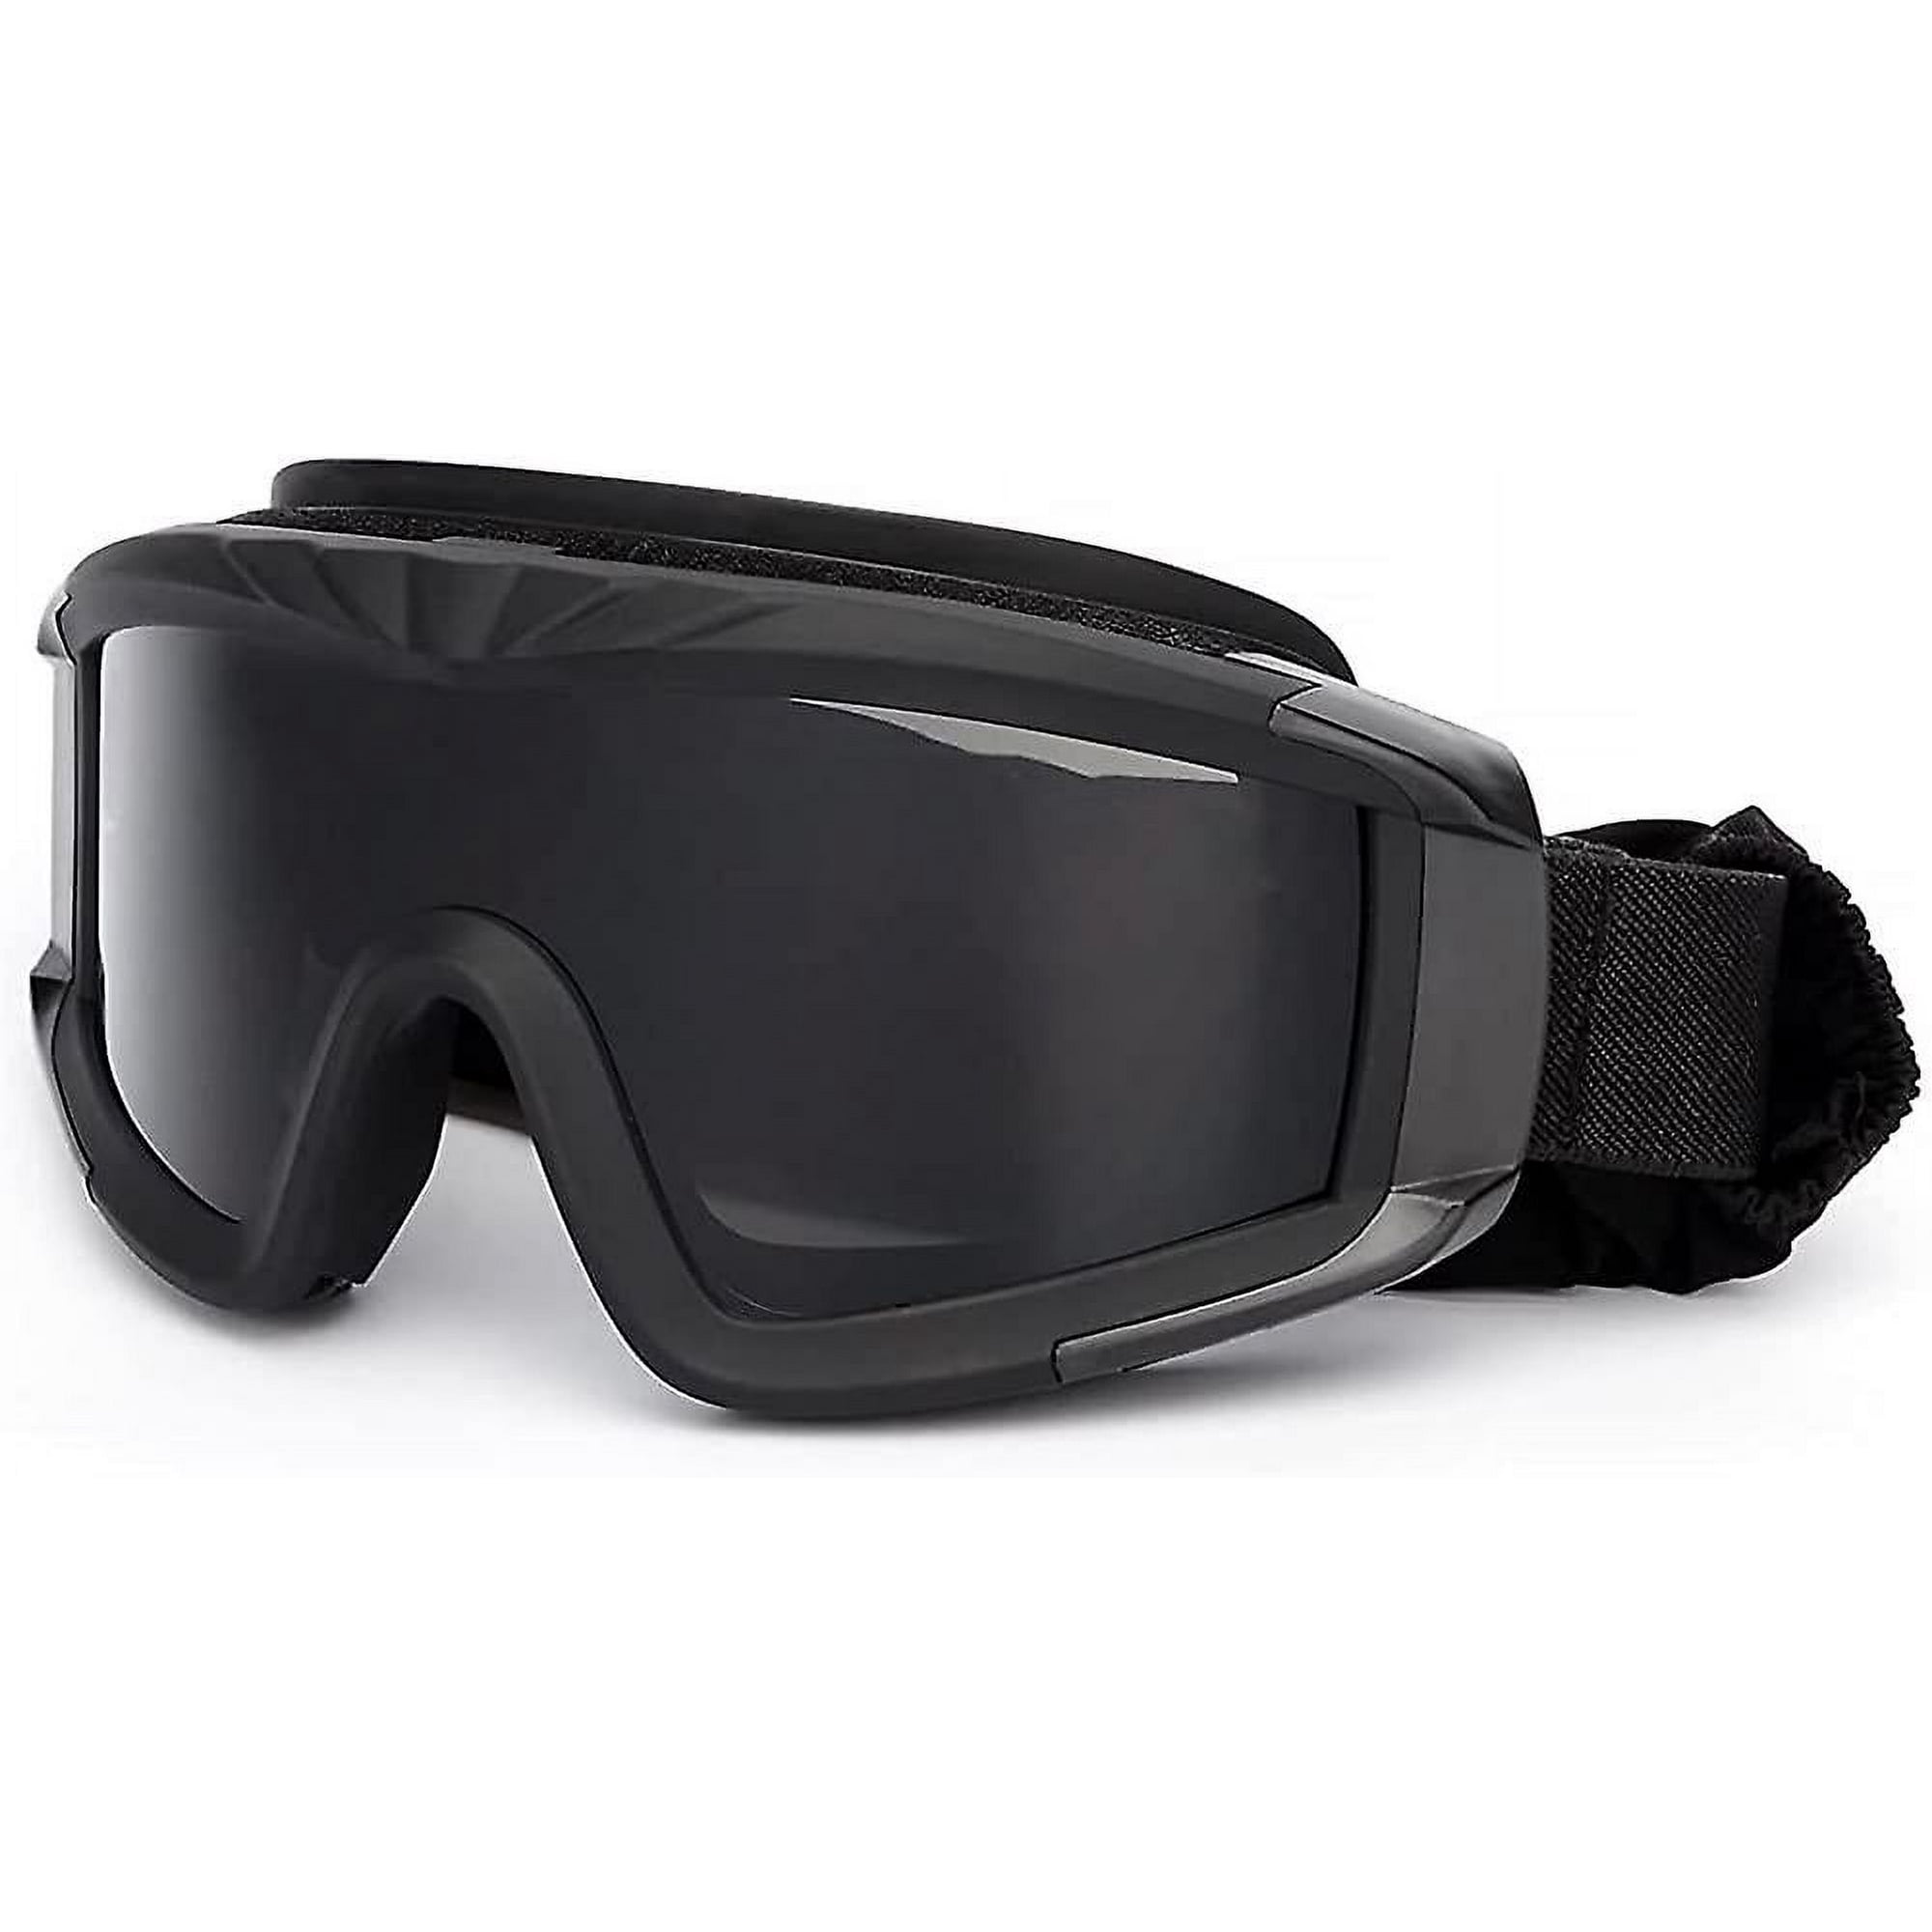 Gafas Airsoft, Gafas Tácticas Militares Airsoft para Deportes Al Aire Libre  con 3 Lentes Intercambiables, Gafas de Tiro con Protección UV, Negras JM